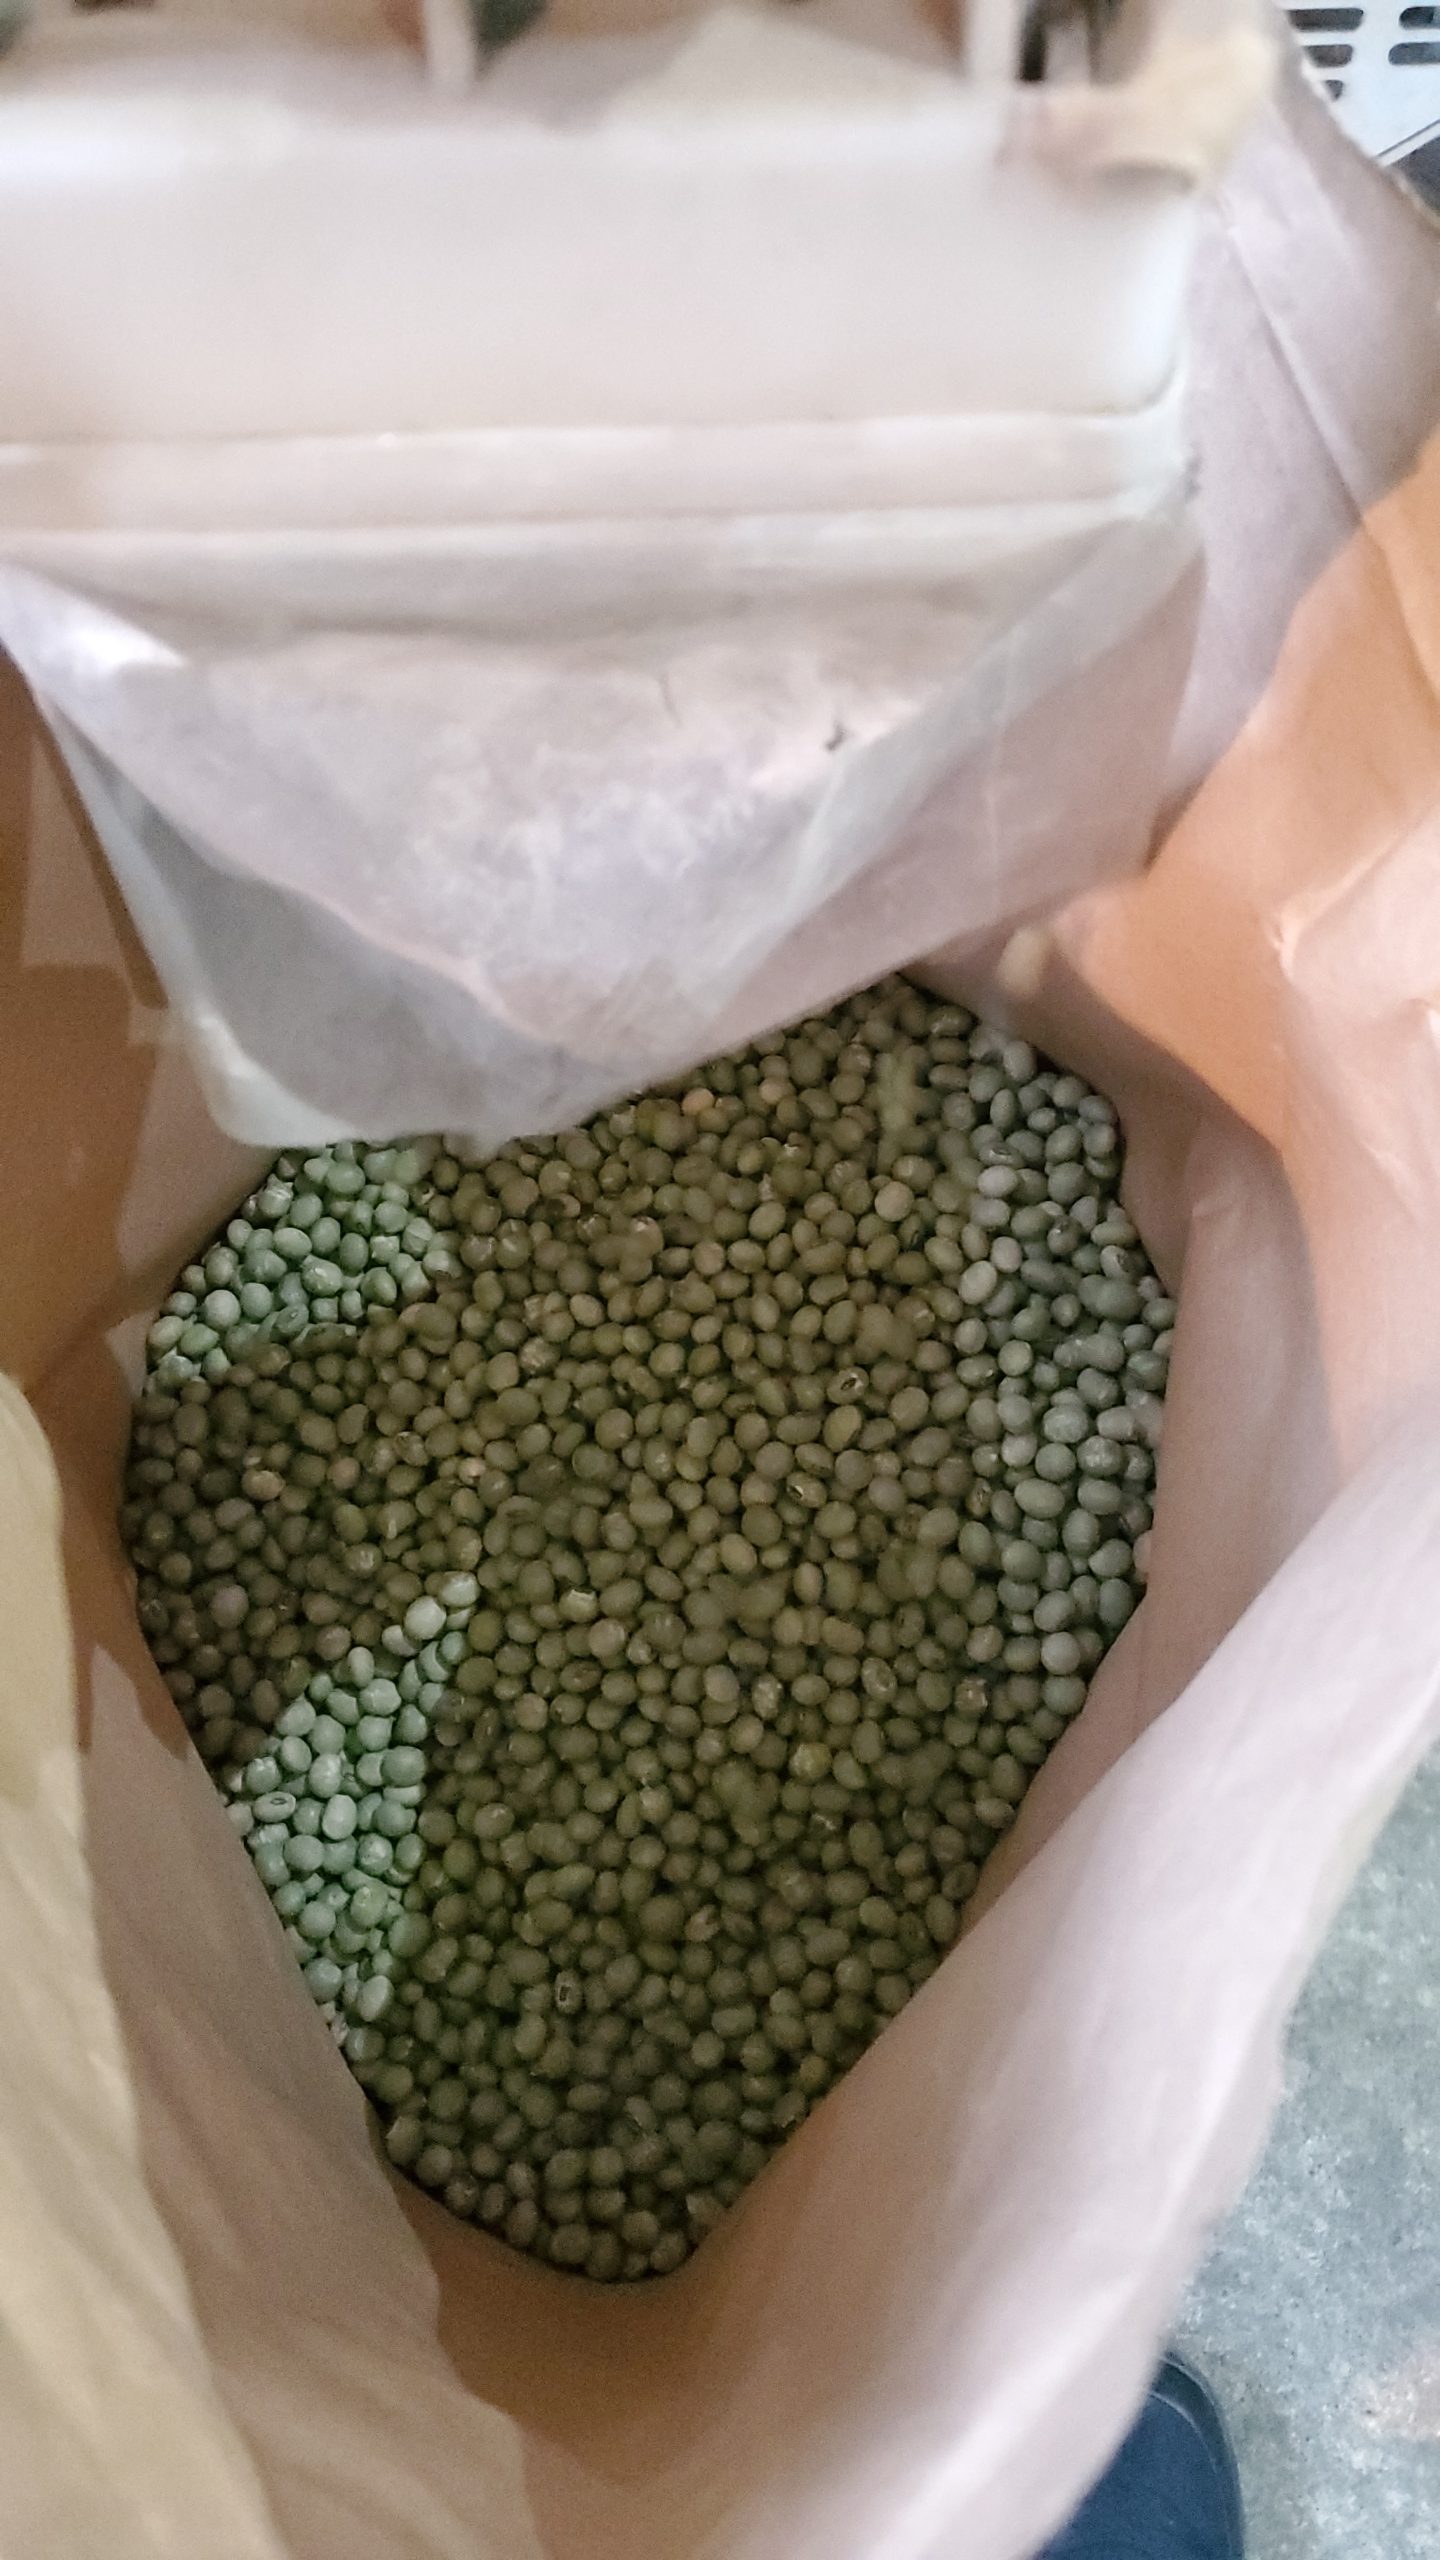 ようやく青大豆の選別を行うことができました。緑がきれいです。